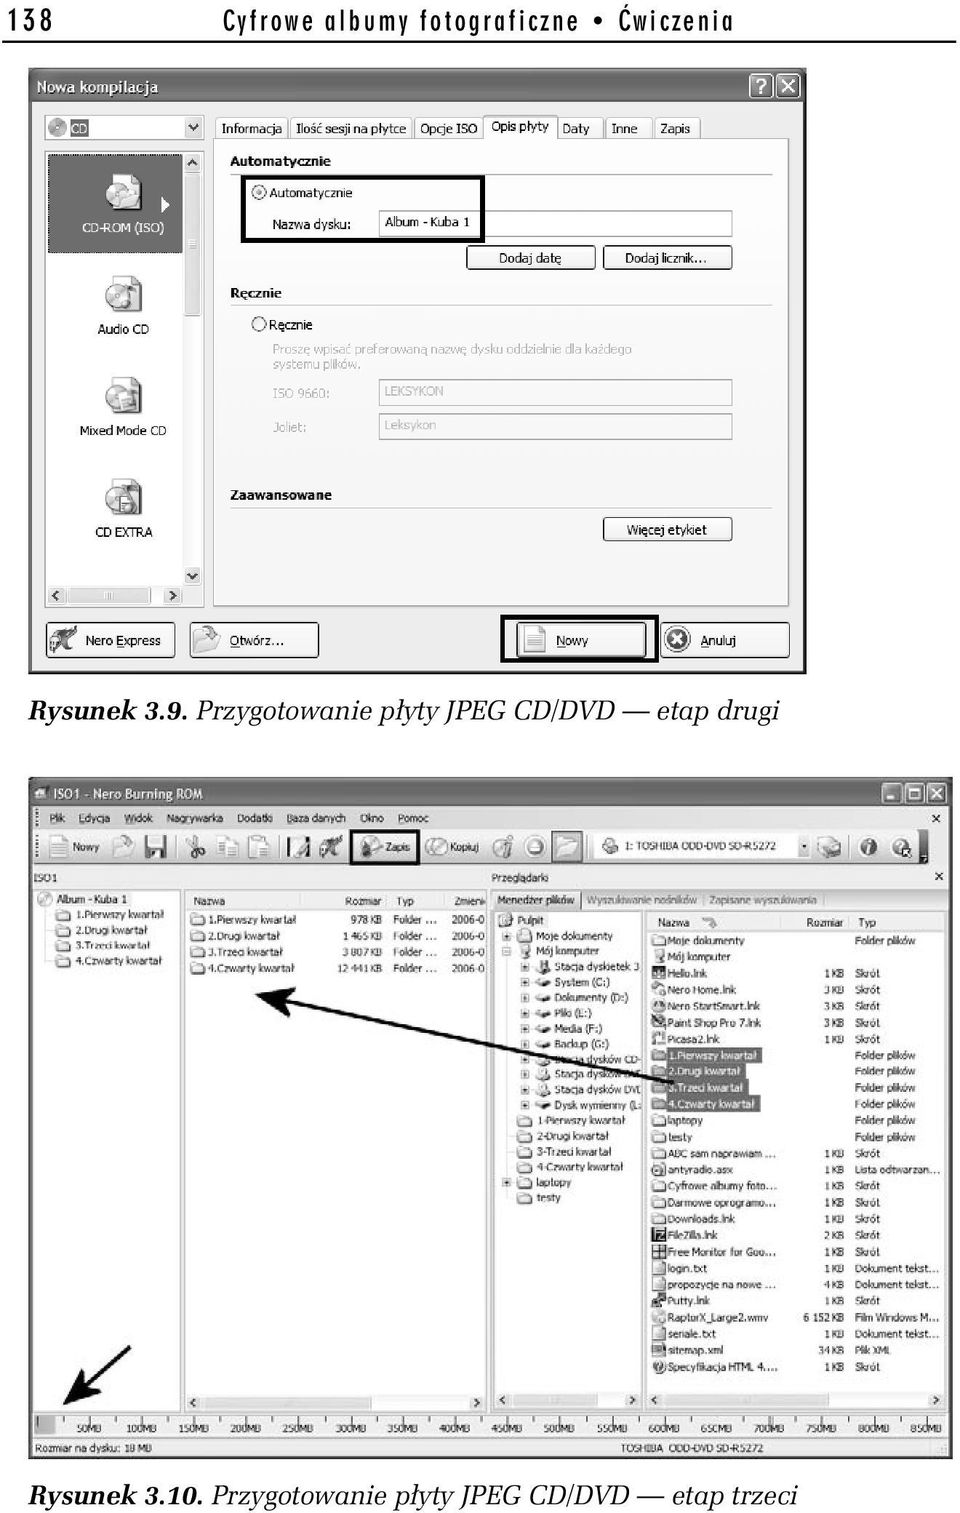 Przygotowanie płyty JPEG CD/DVD etap